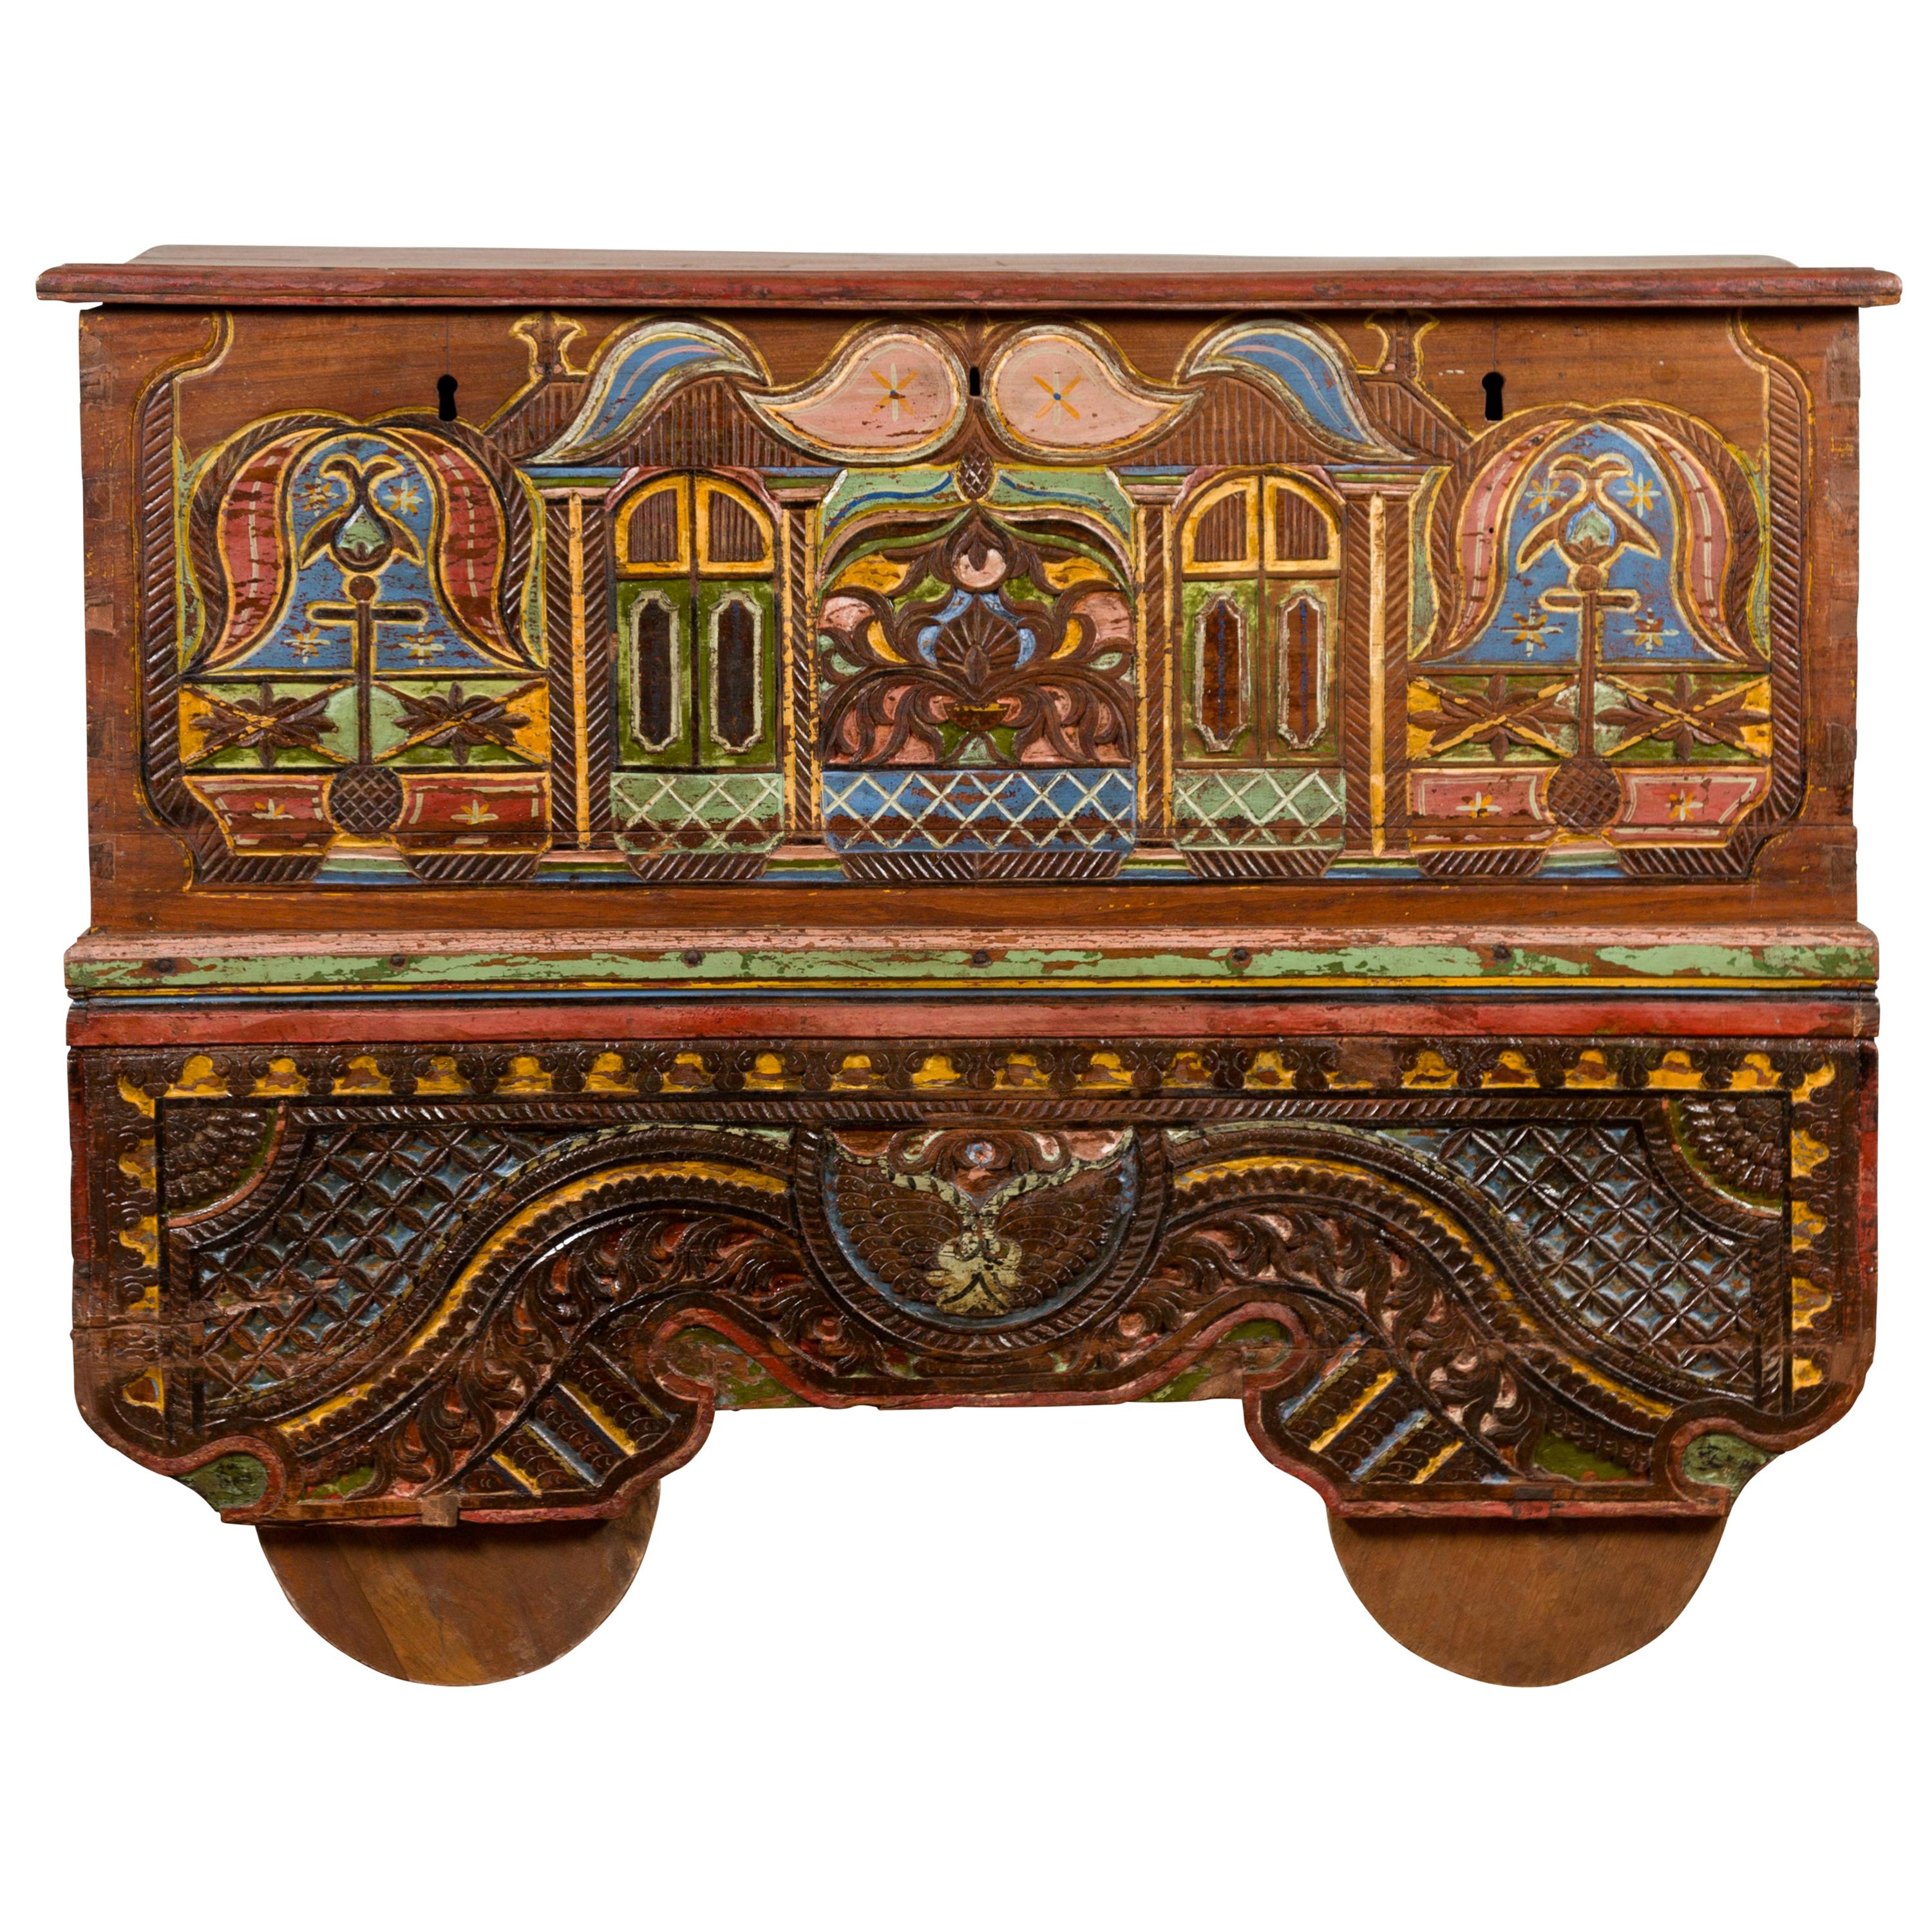 Coffre de marchand polychrome indonésien Madurese du 19ème siècle sur roues